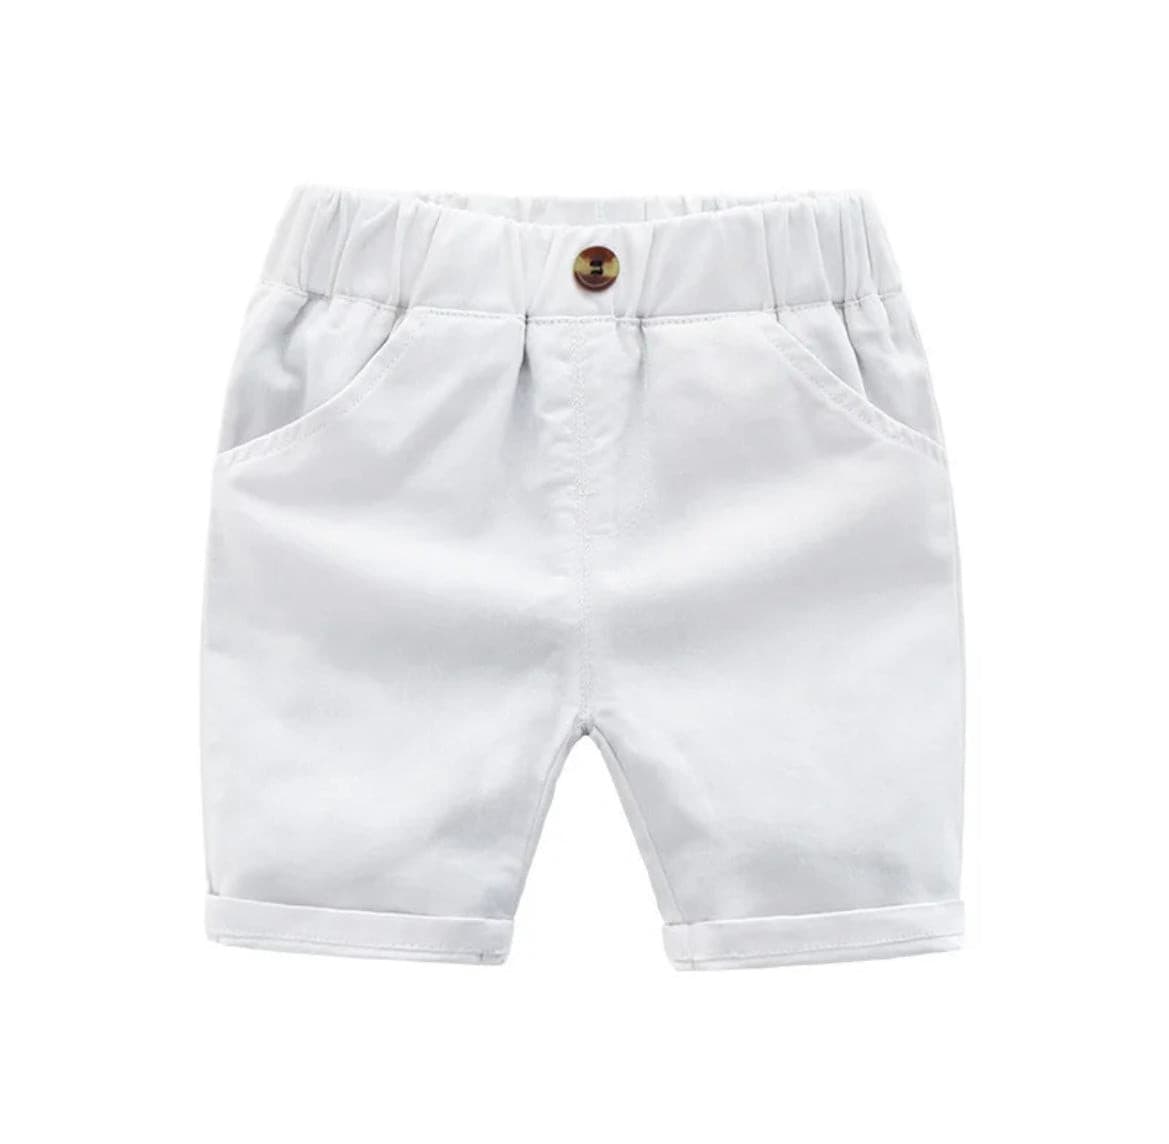 Dennis - Boys Cotton Casual Shorts.